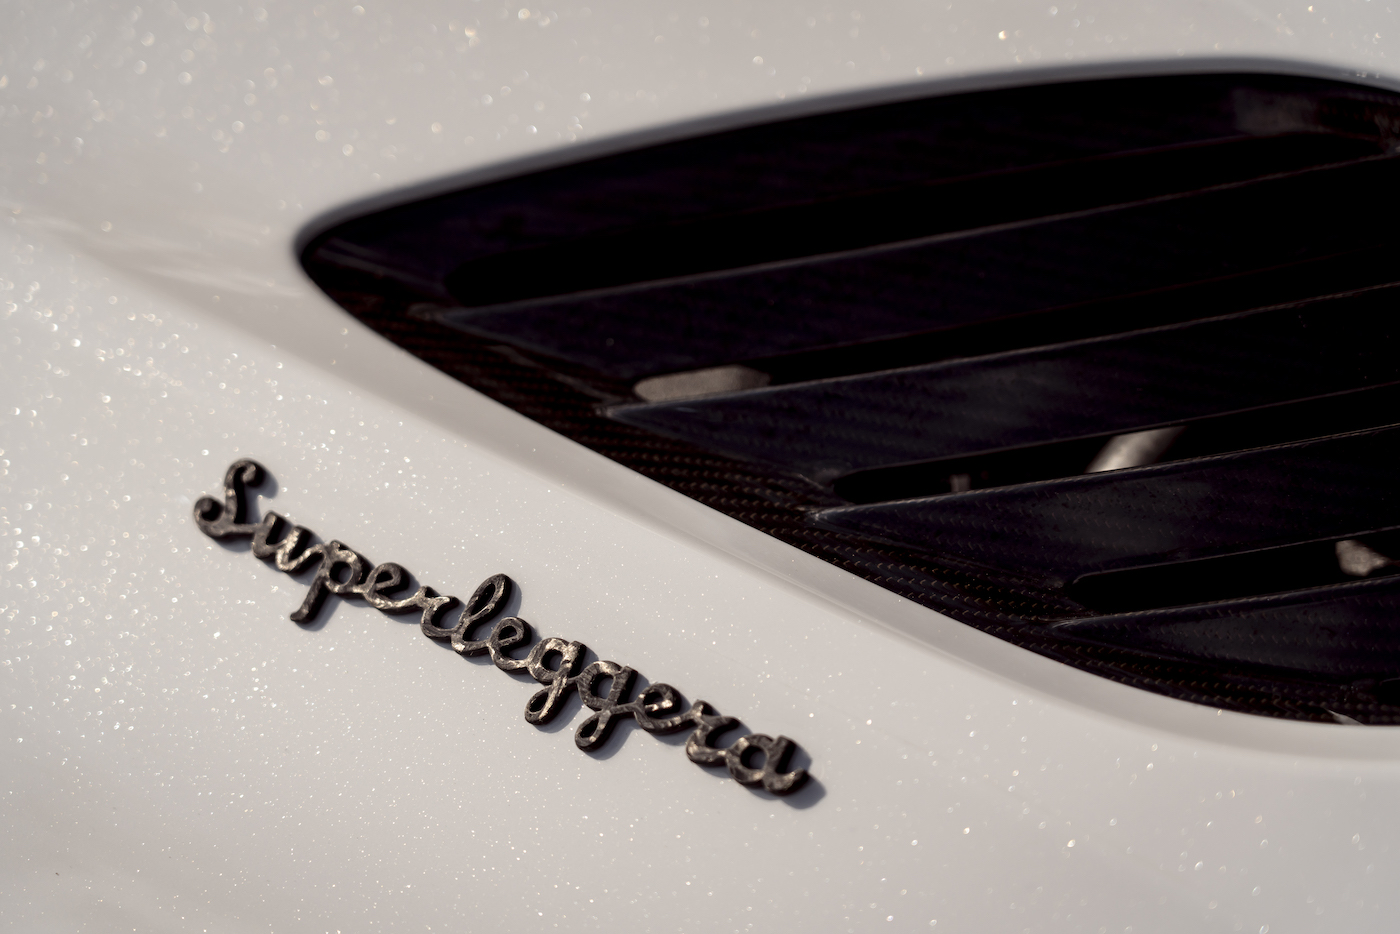 Aston Martin DBS Superleggera Volante: Ein Supersport-Cabrio mit 725 PS 4